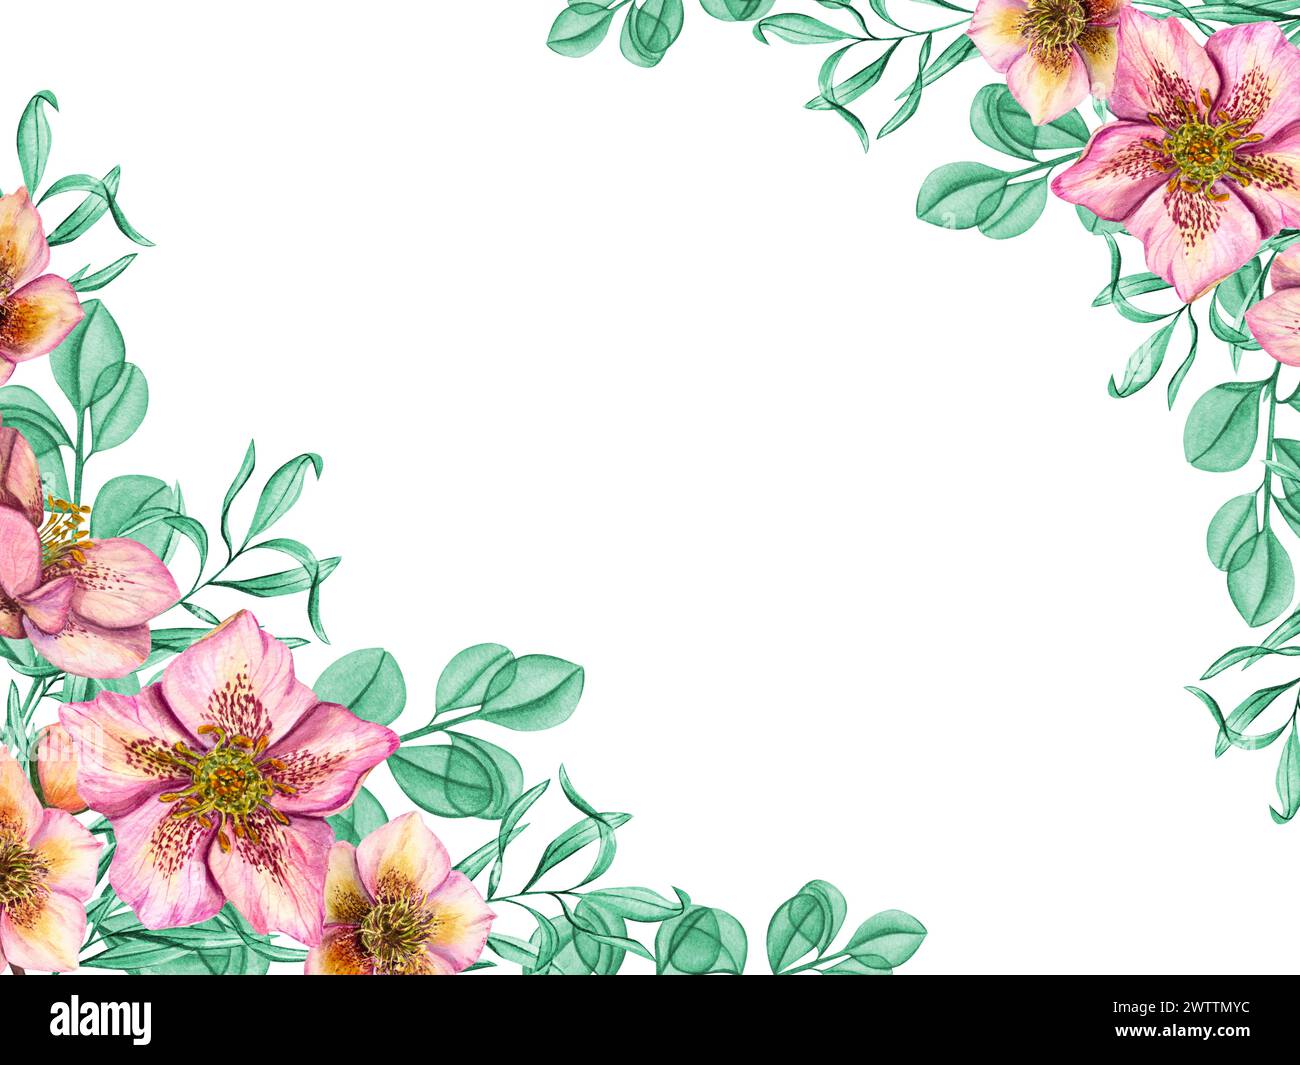 Rosafarbene Hellebores mit Minzkräutern. Frühlingspflanzen isoliert auf weißem Hintergrund. Horizontaler Rahmen der Helleborus-Blüte mit Eukalyptuszweigen. Stockfoto